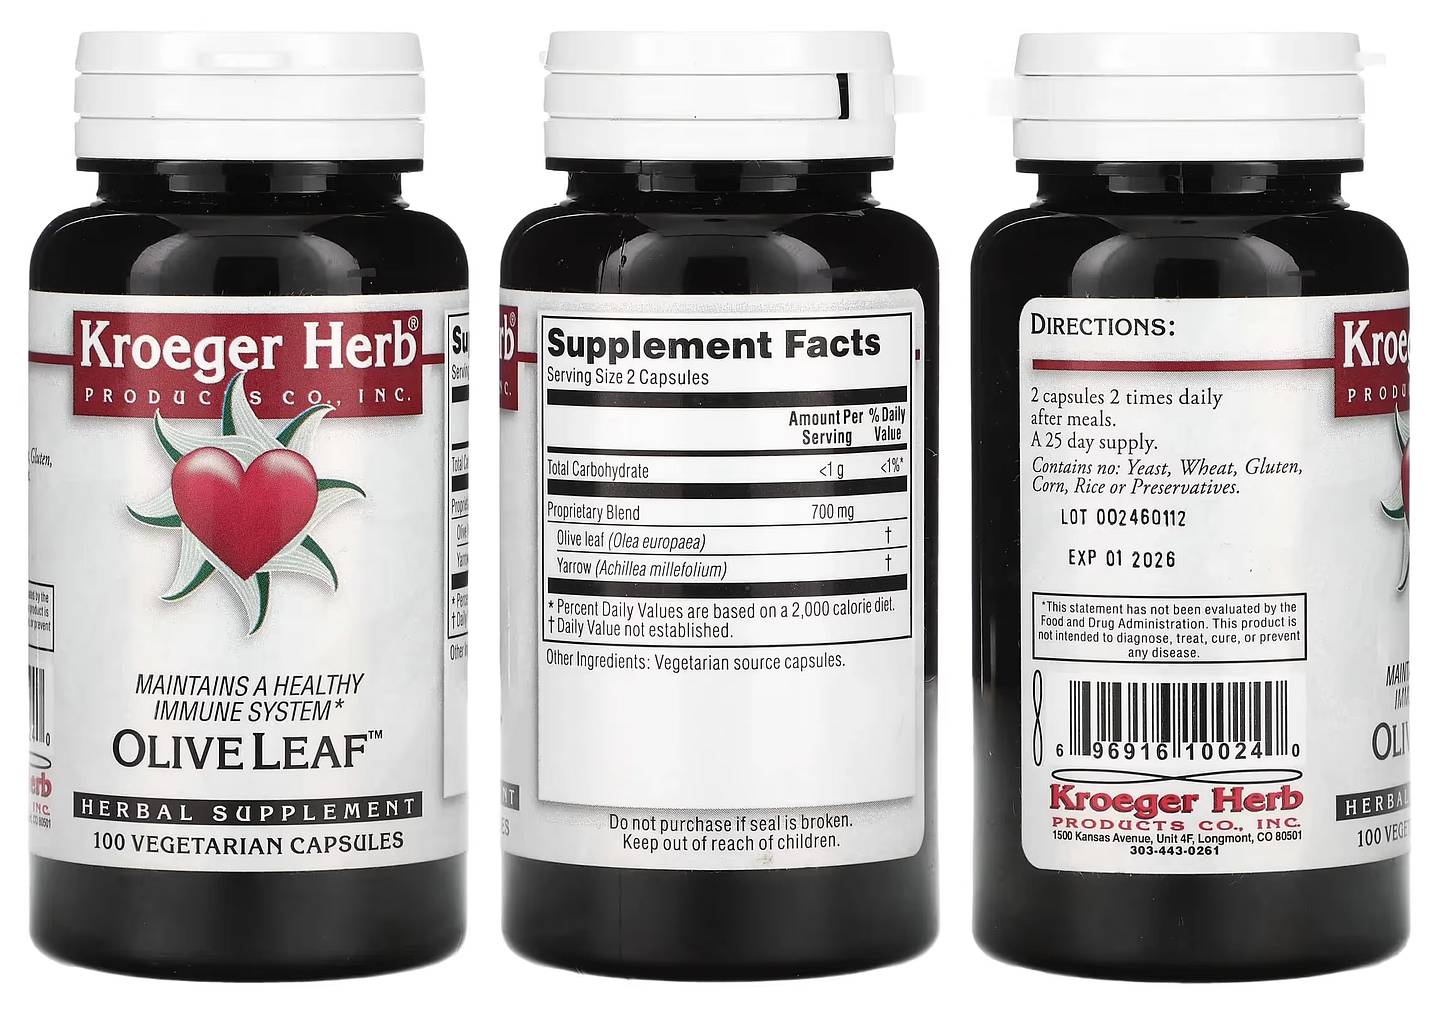 Kroeger Herb Products, Olive Leaf packaging